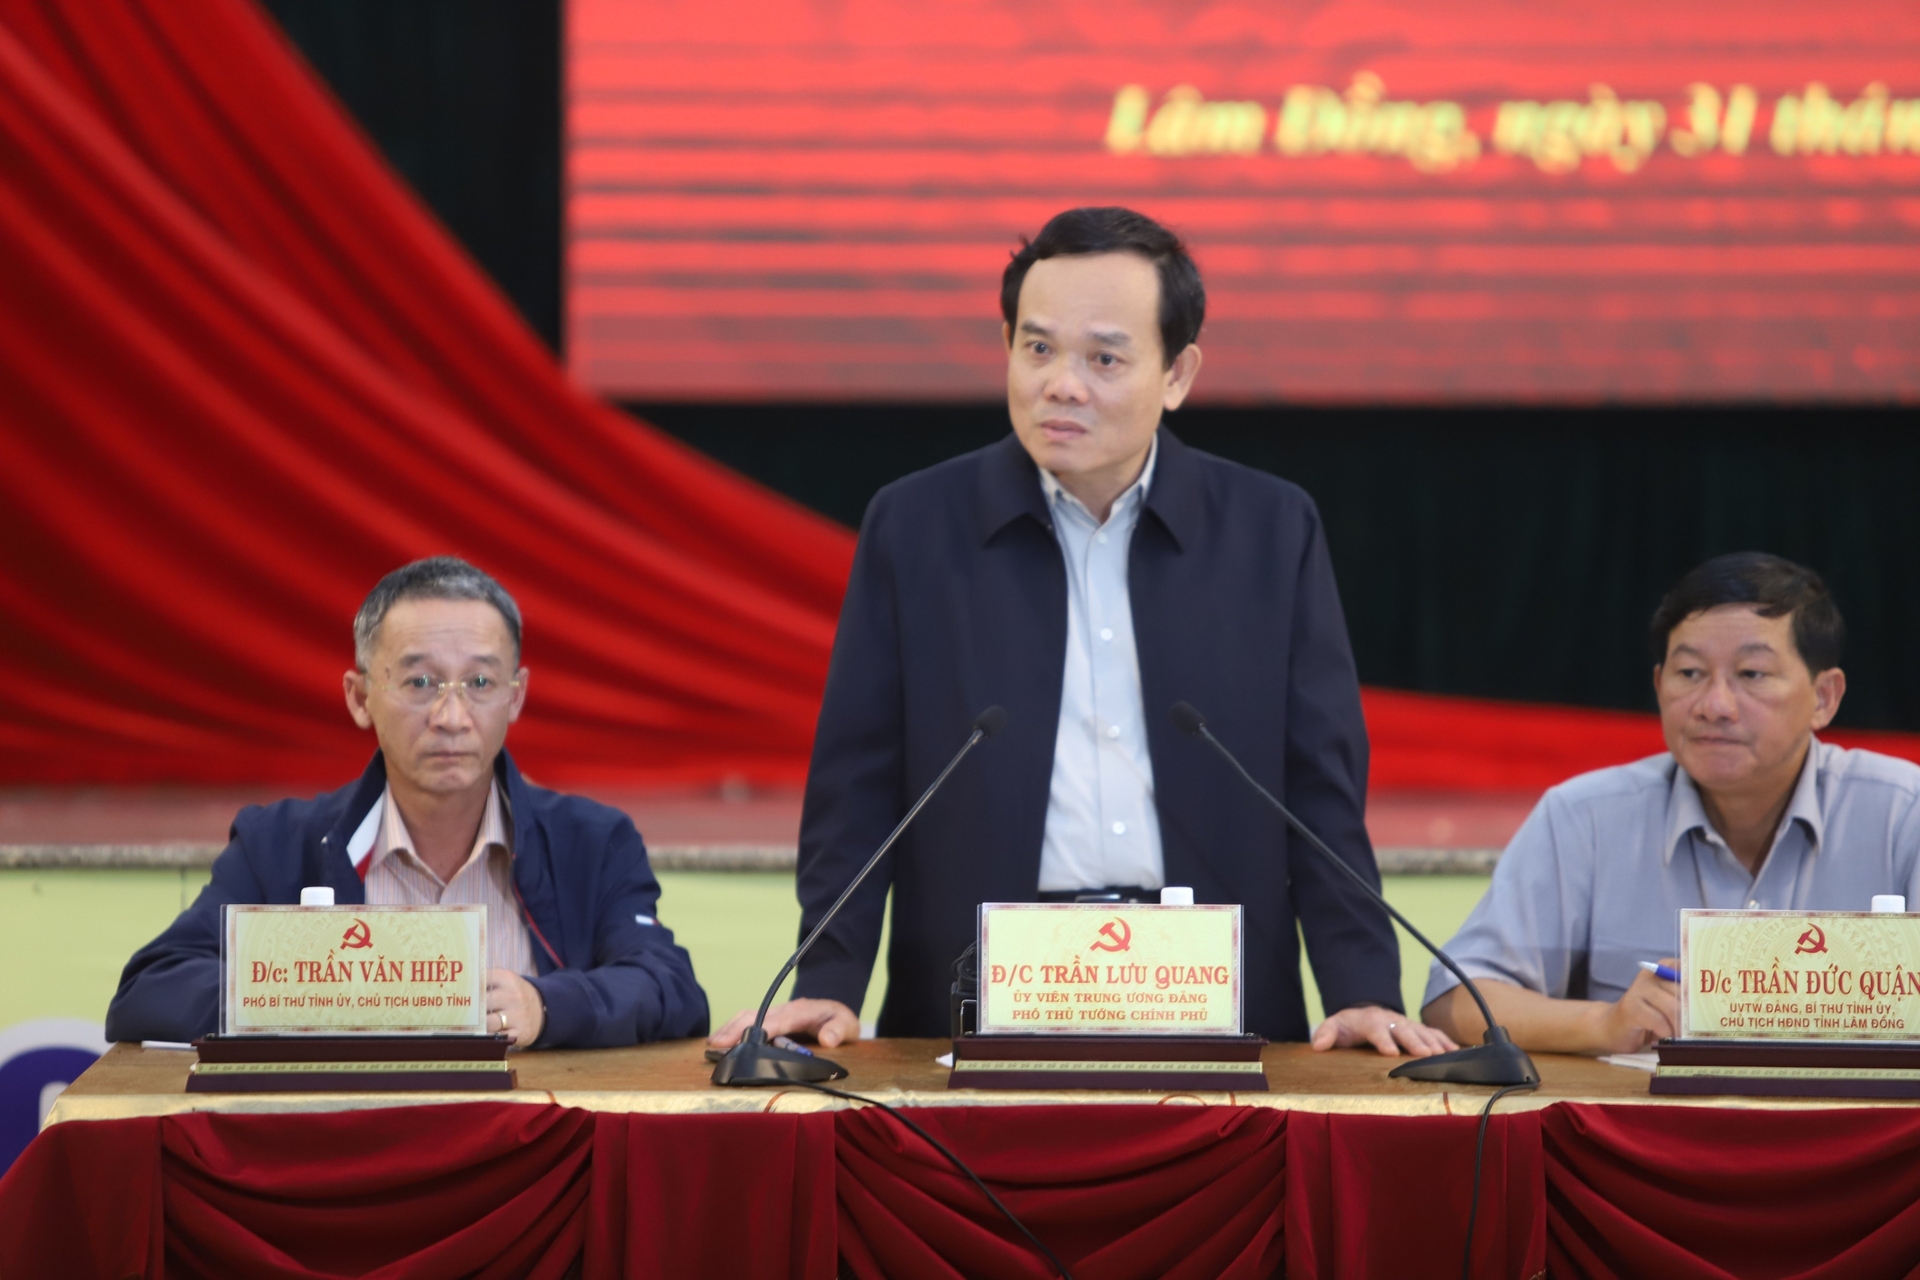 Phó Thủ tướng Chính phủ, Trưởng Ban Chỉ đạo Quốc gia về Phòng, chống thiên tai Trần Lưu Quang làm việc với UBND tỉnh Lâm Đồng về công tác phòng chống thiên tai, cứu hộ, cứu nạn tại địa phương.